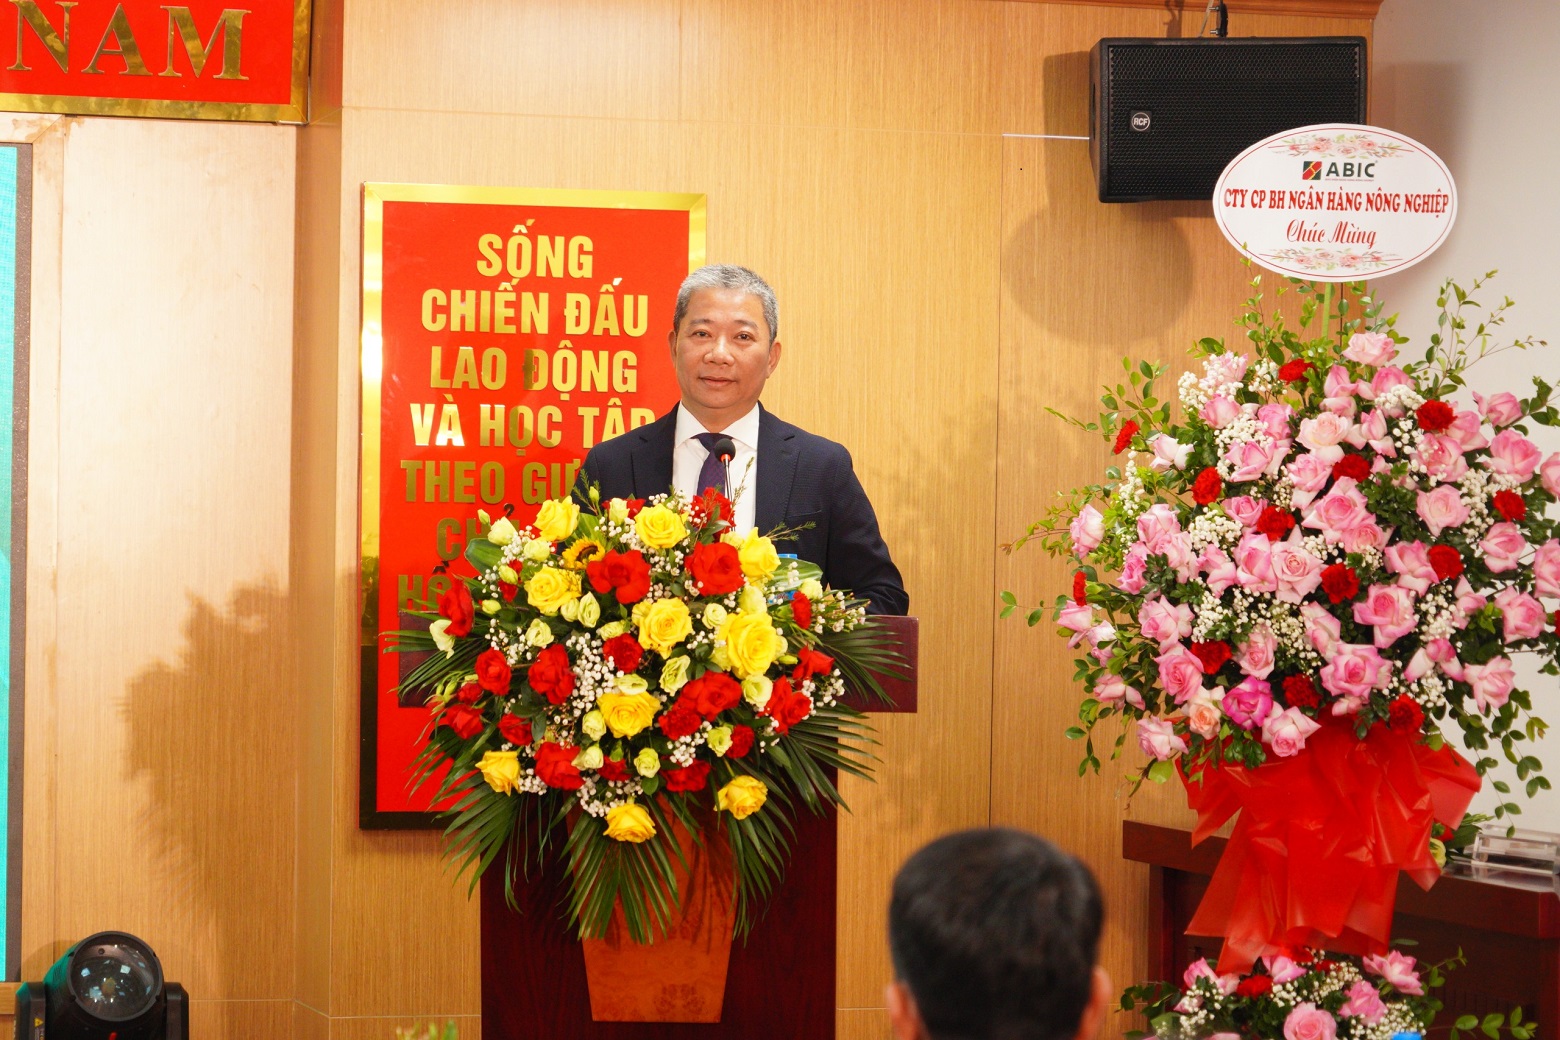 Ông Nguyễn Tiến Hải, Chủ tịch Hội đồng quản trị Công ty Bảo hiểm Agribank phát biểu tại buổi lễ.